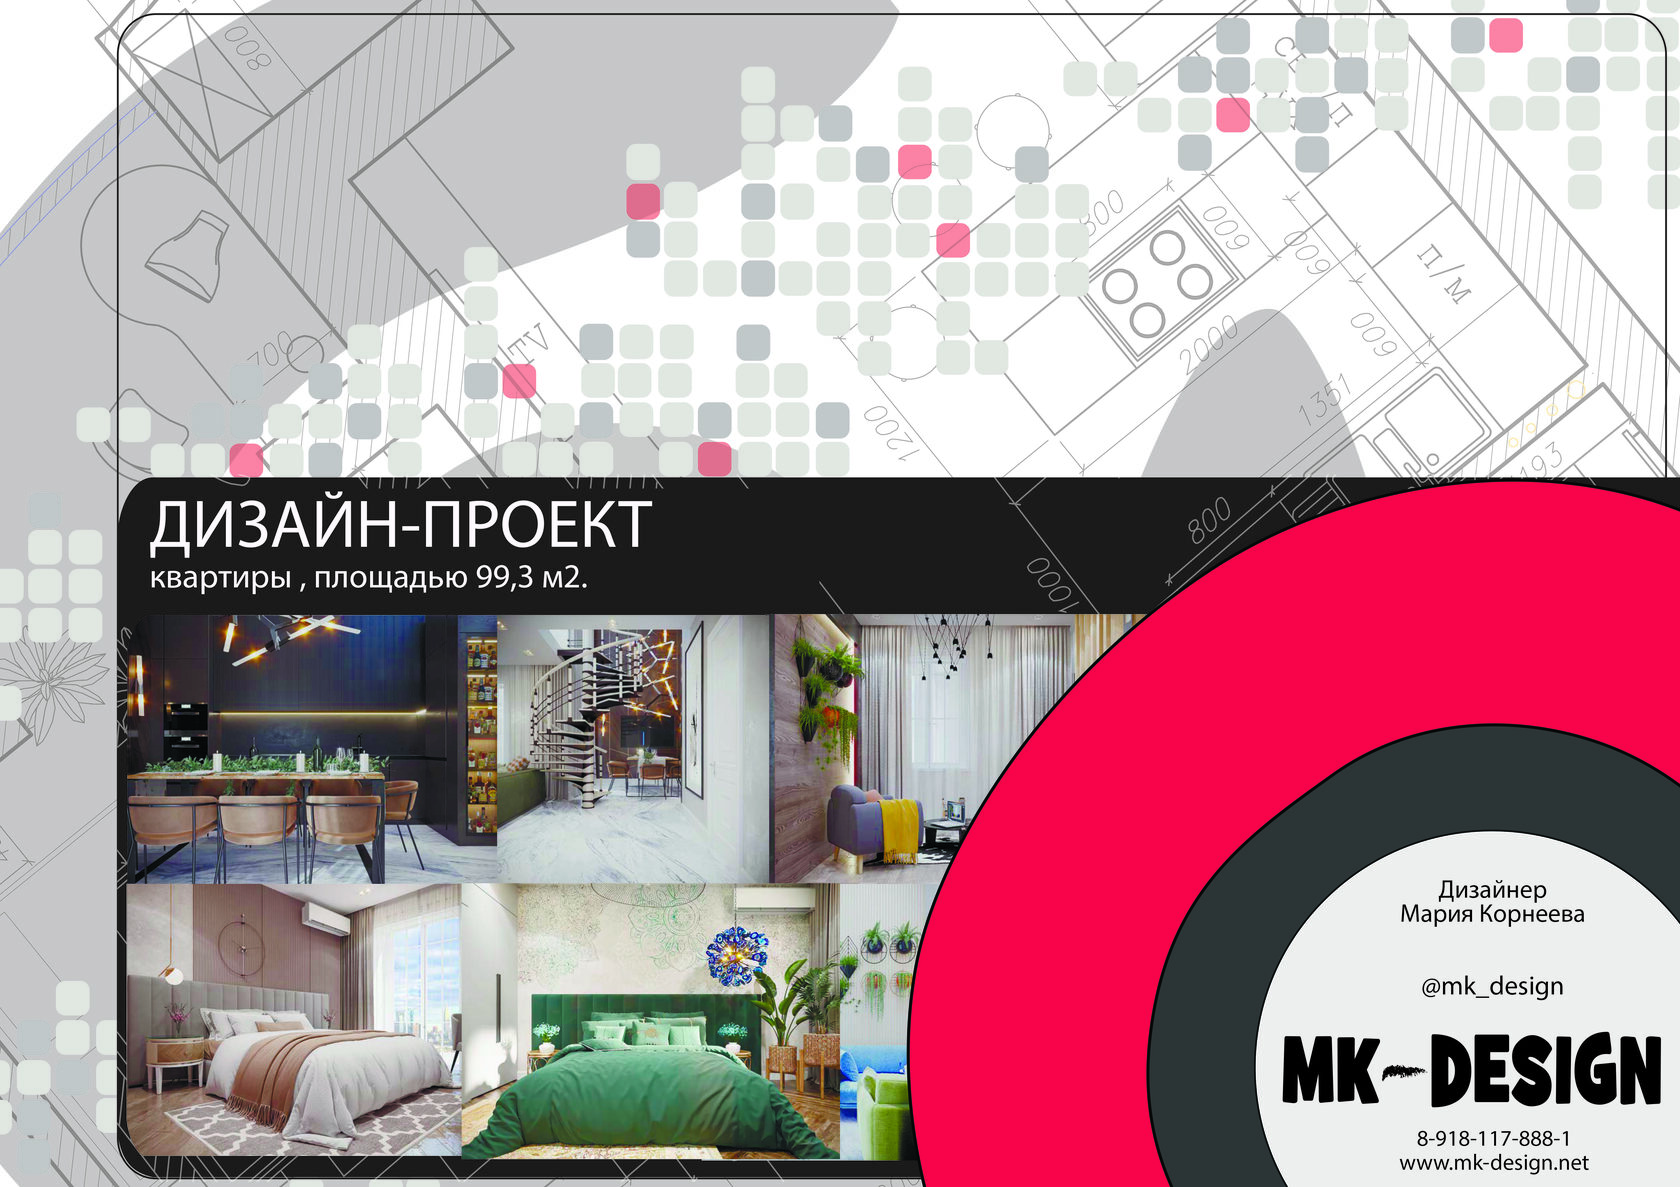 MK-Ремстрой: ремонт|дизайн|мебель | Санкт-Петербург